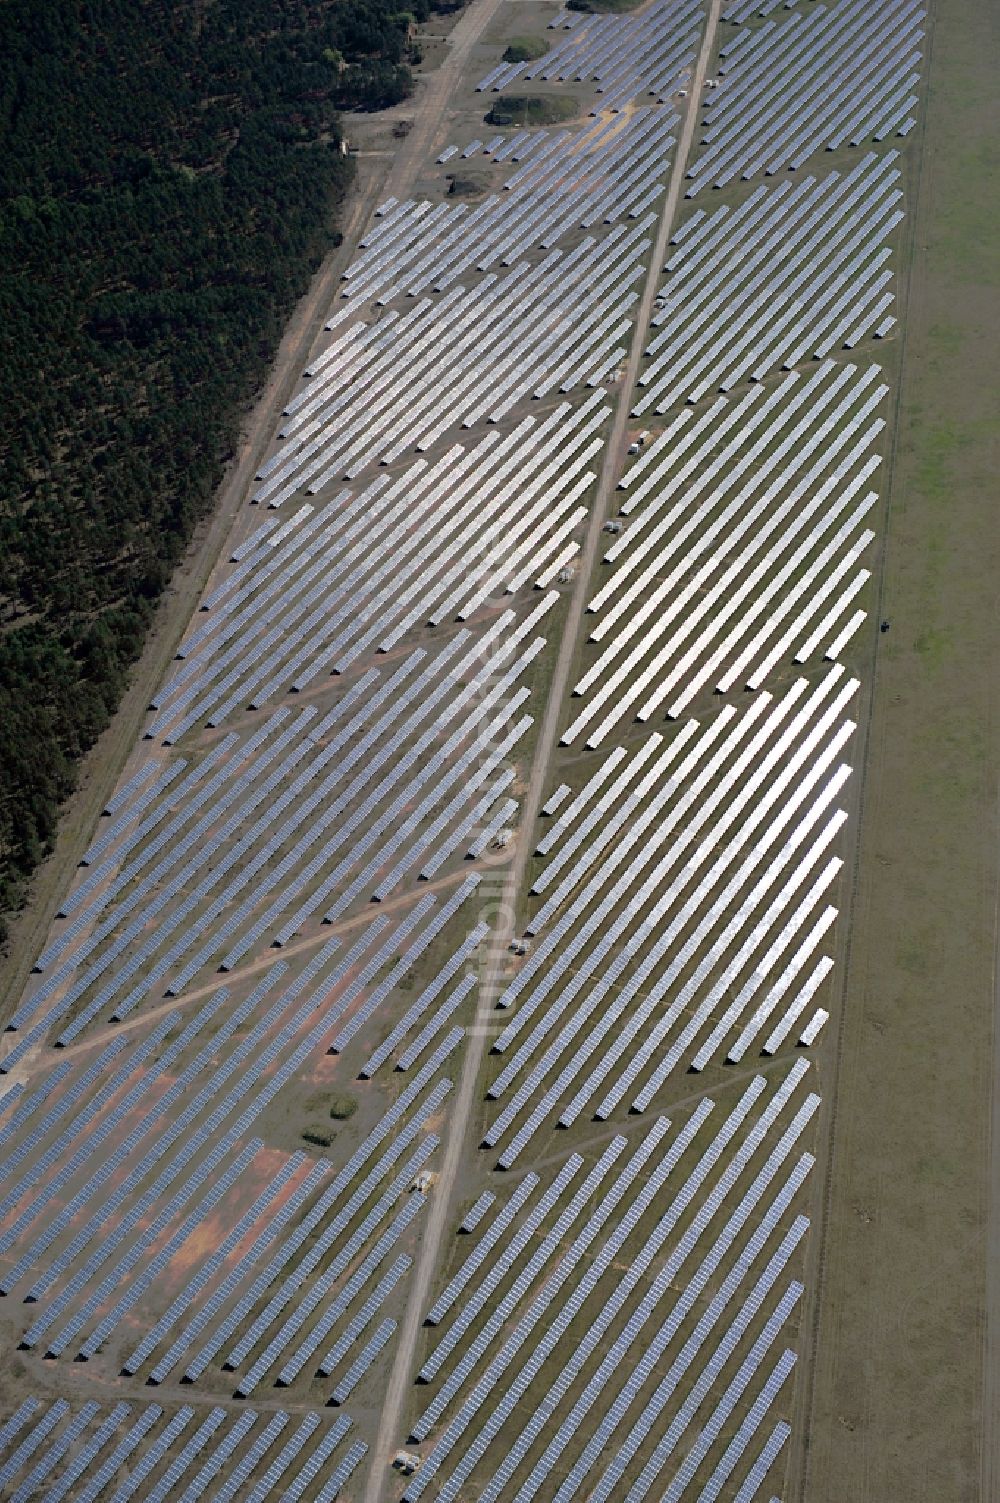 Drewitz aus der Vogelperspektive: Solarpark / Photovoltaikanlage auf dem Flugplatz Cottbus-Drewitz im Bundesland Brandenburg